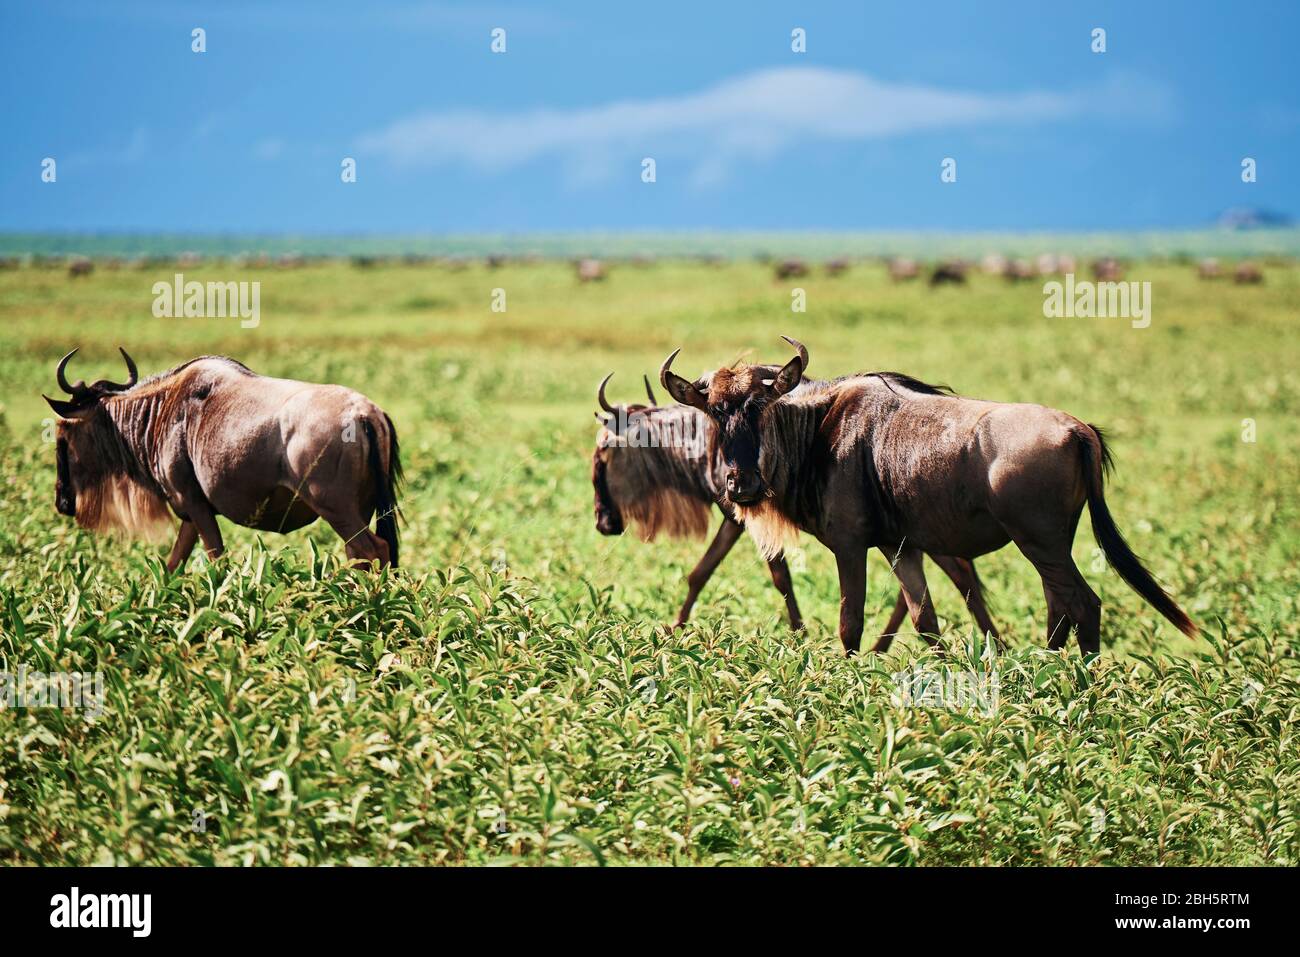 A herd of wildebeests in Africa Stock Photo